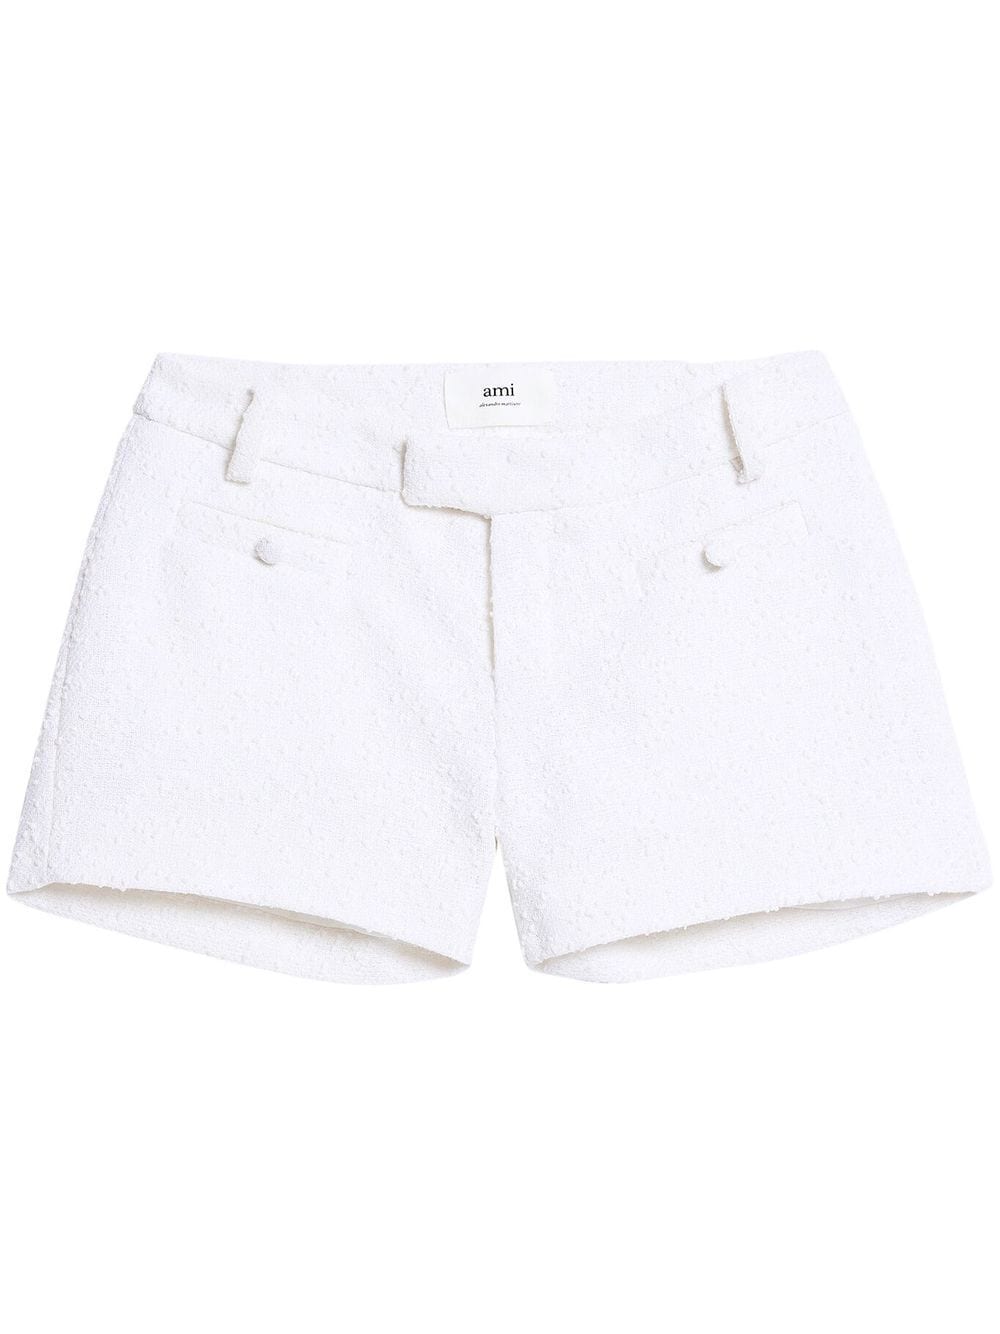 AMI Paris Klassische Tweed-Shorts - Weiß von AMI Paris